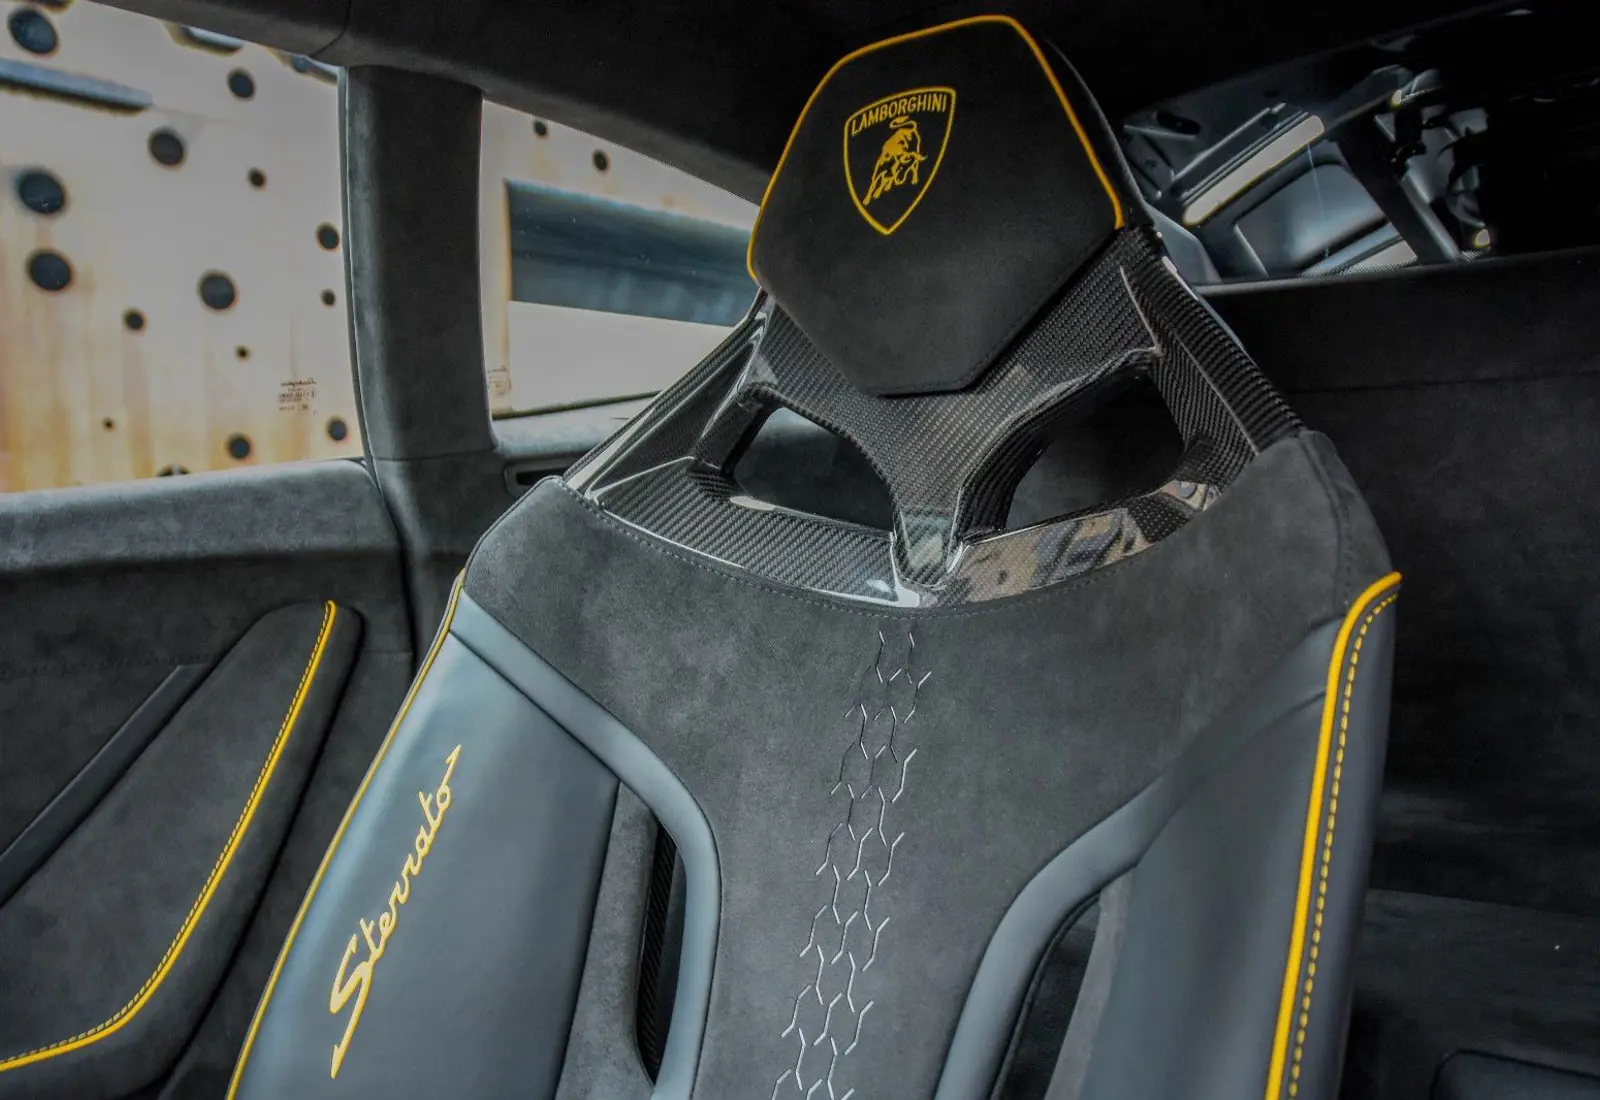 Lamborghini Huracán Sterrato * 1/1499 * CARBON SEATS * ROOF RACK *  - 49535